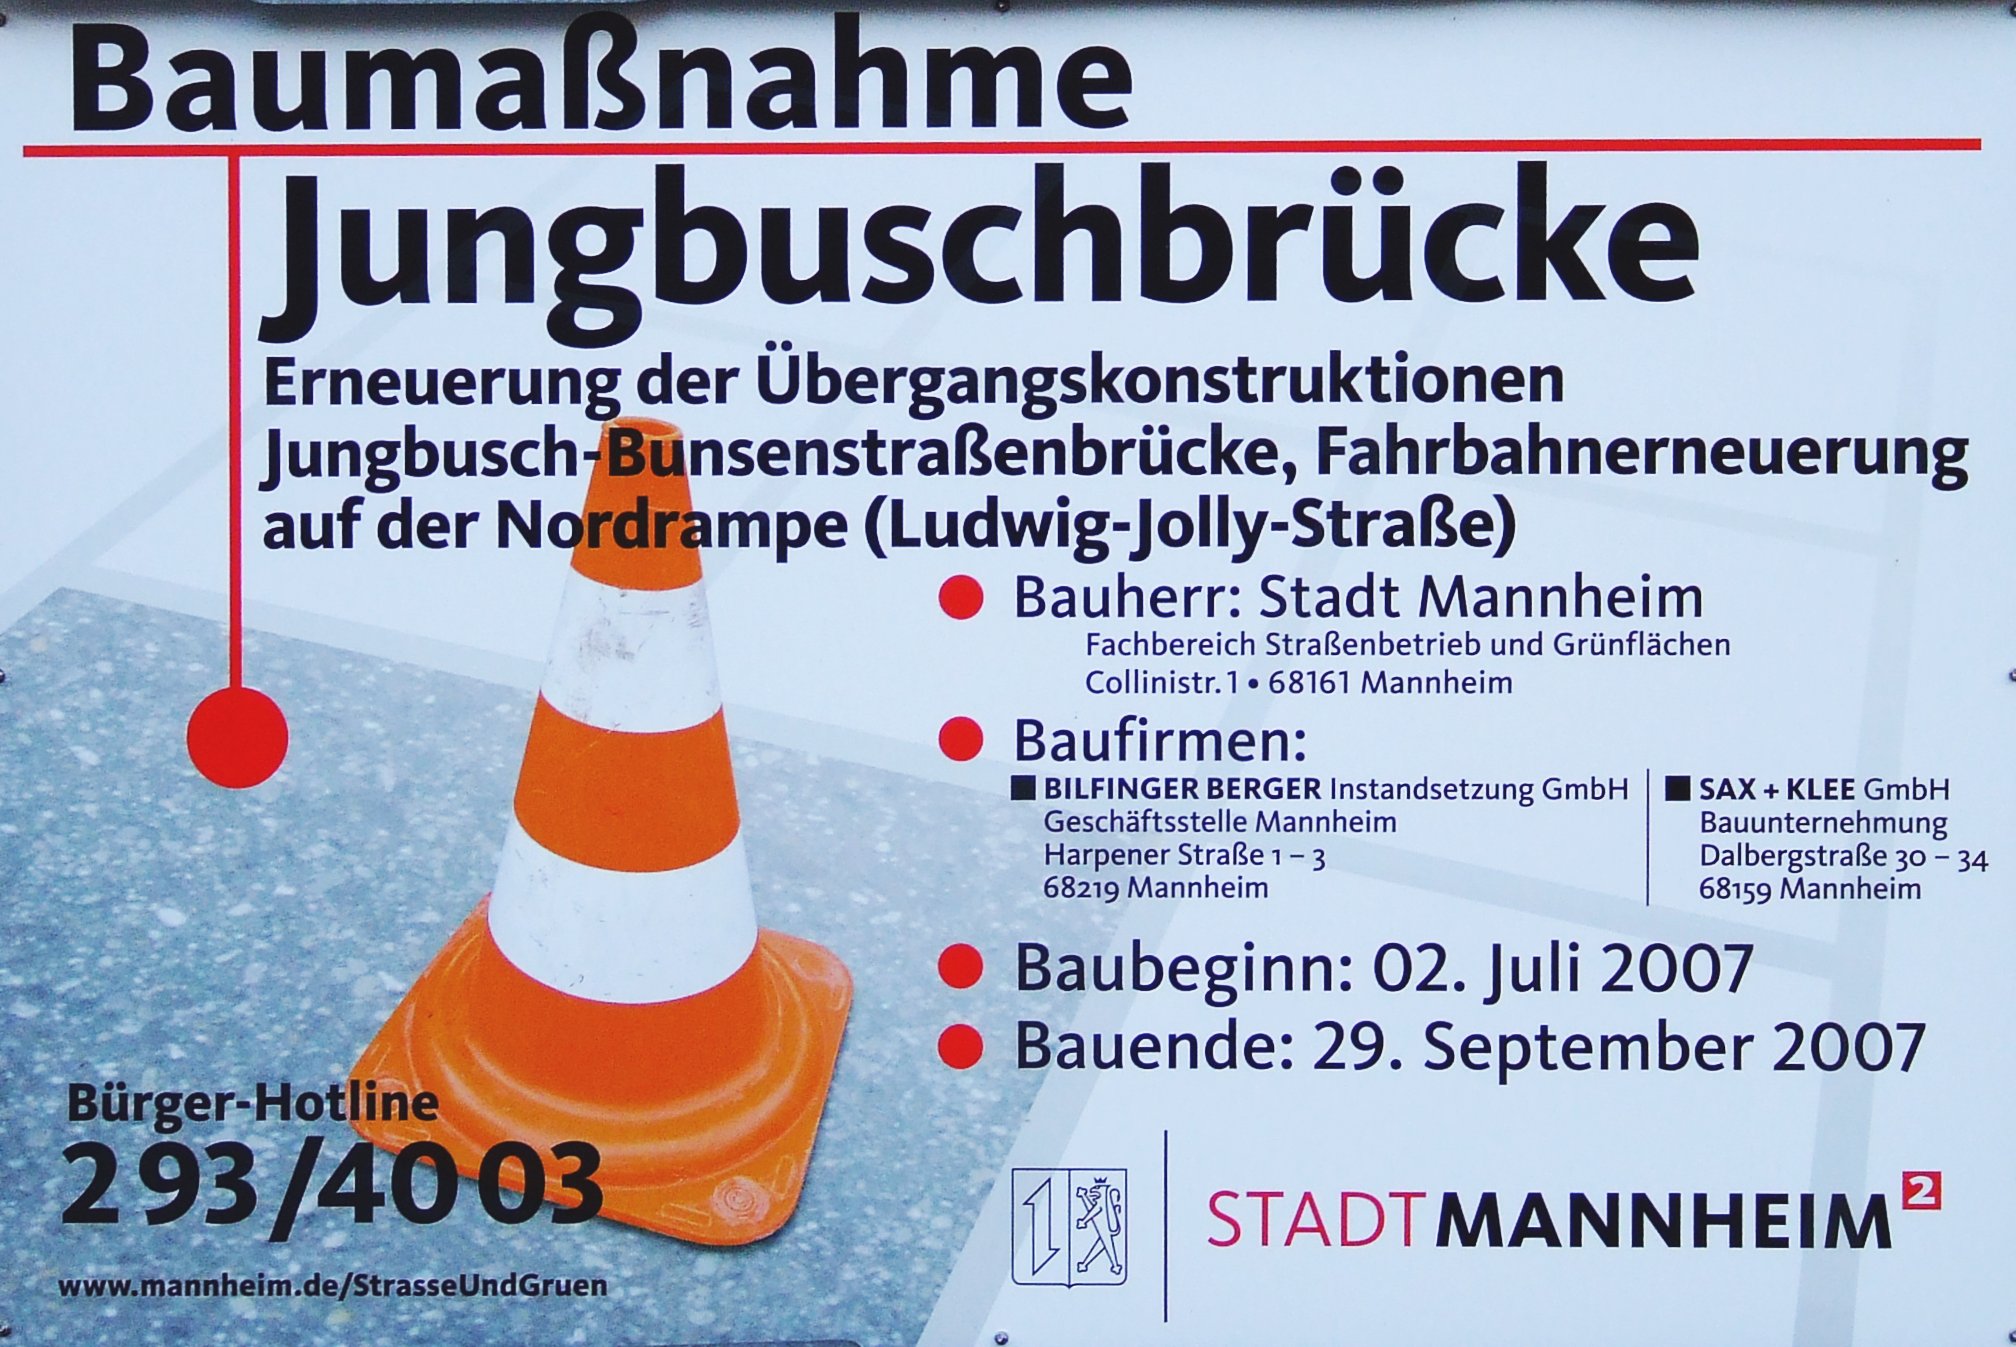 Datei:Mannheim Jungbuschbruecke Baumassnahme 2007 Schild.jpg